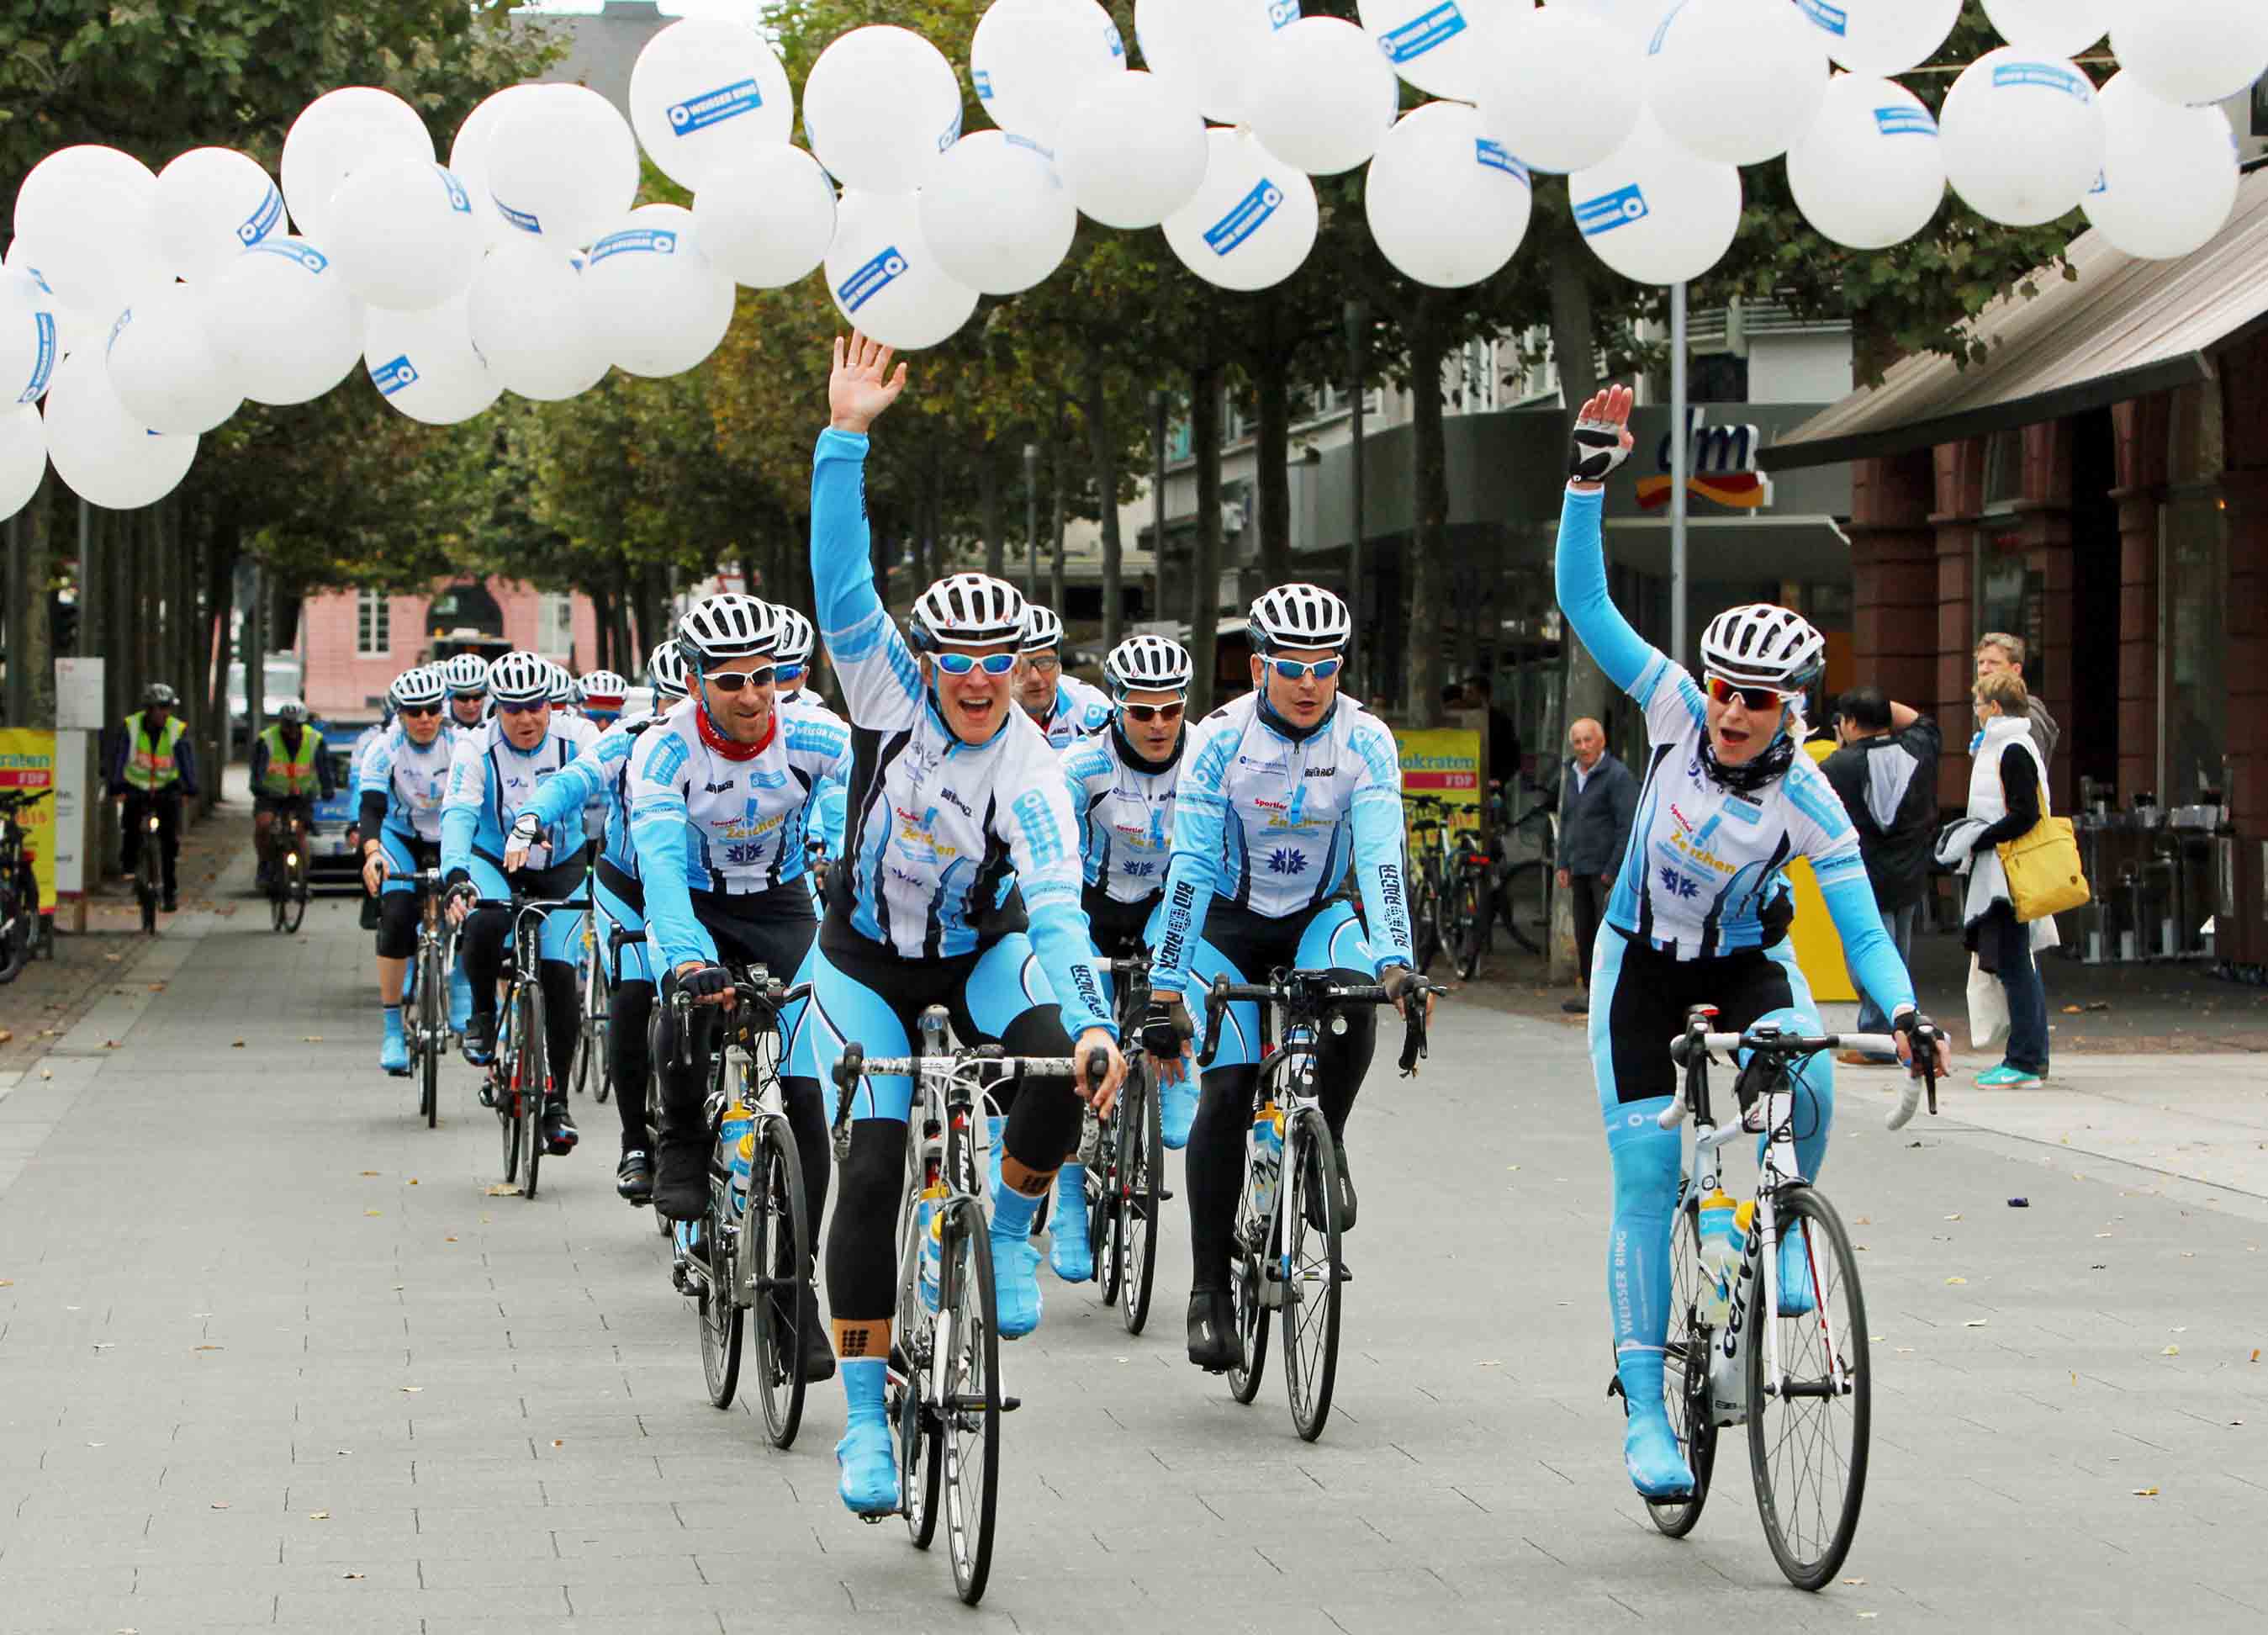 News - Central: Etappenziel erreicht: Das Radsportteam des WEISSEN RINGS ist in Mainz angekommen. Das Team tourt durch Deutschland, um auf die Situation von Kriminalittsopfern aufmerksam zu machen. Foto: WEISSER RING / Michael Bellaire